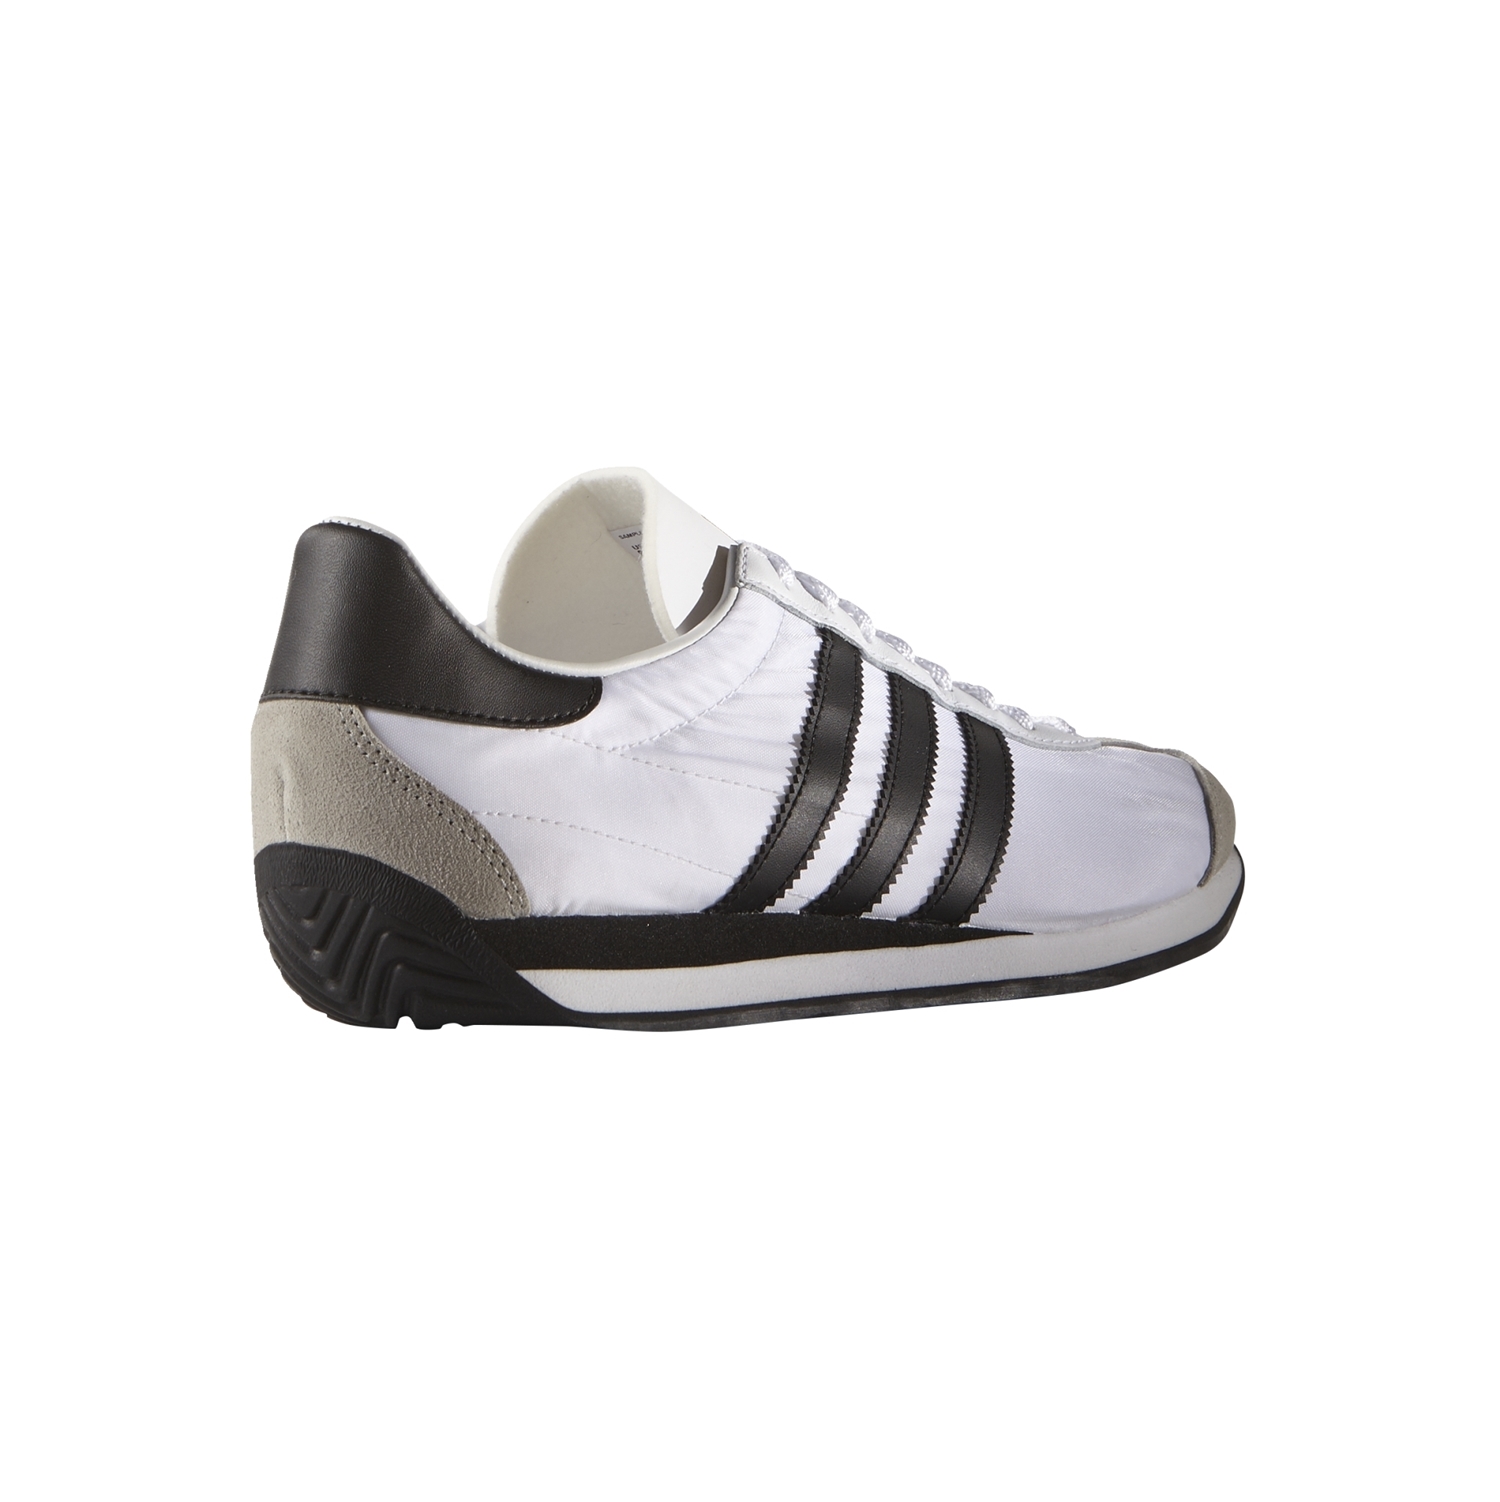 Adidas Country OG "Racer Vintage" (white/black)